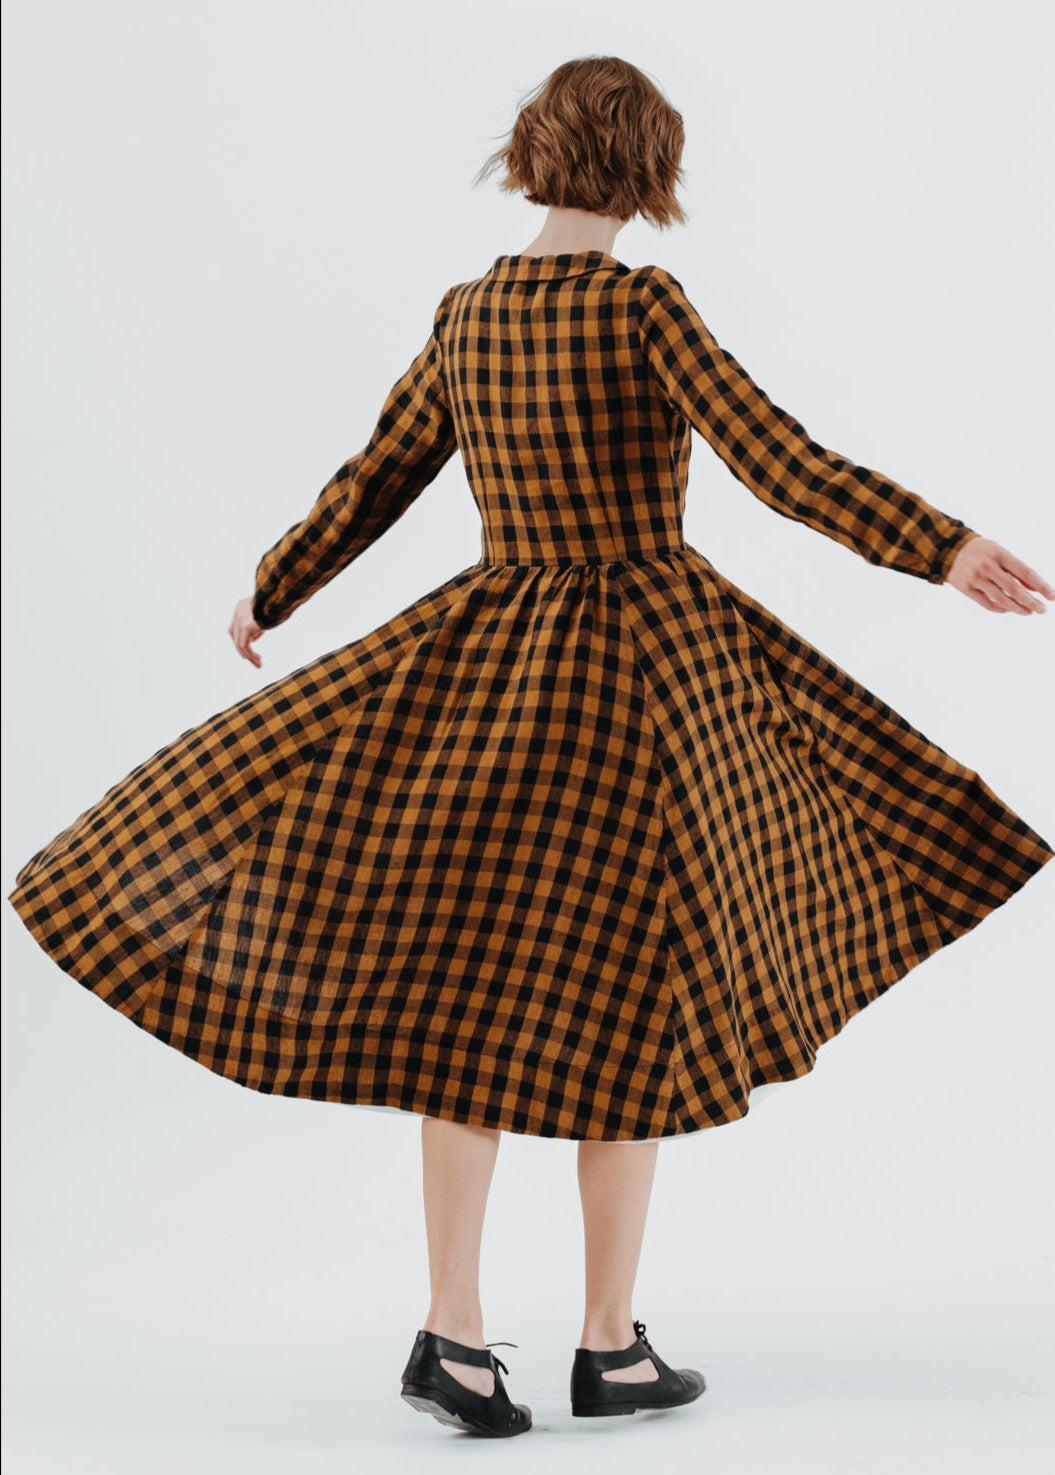 Classic Dress, Long Sleeve - Son de Flor#color_brown-checkers